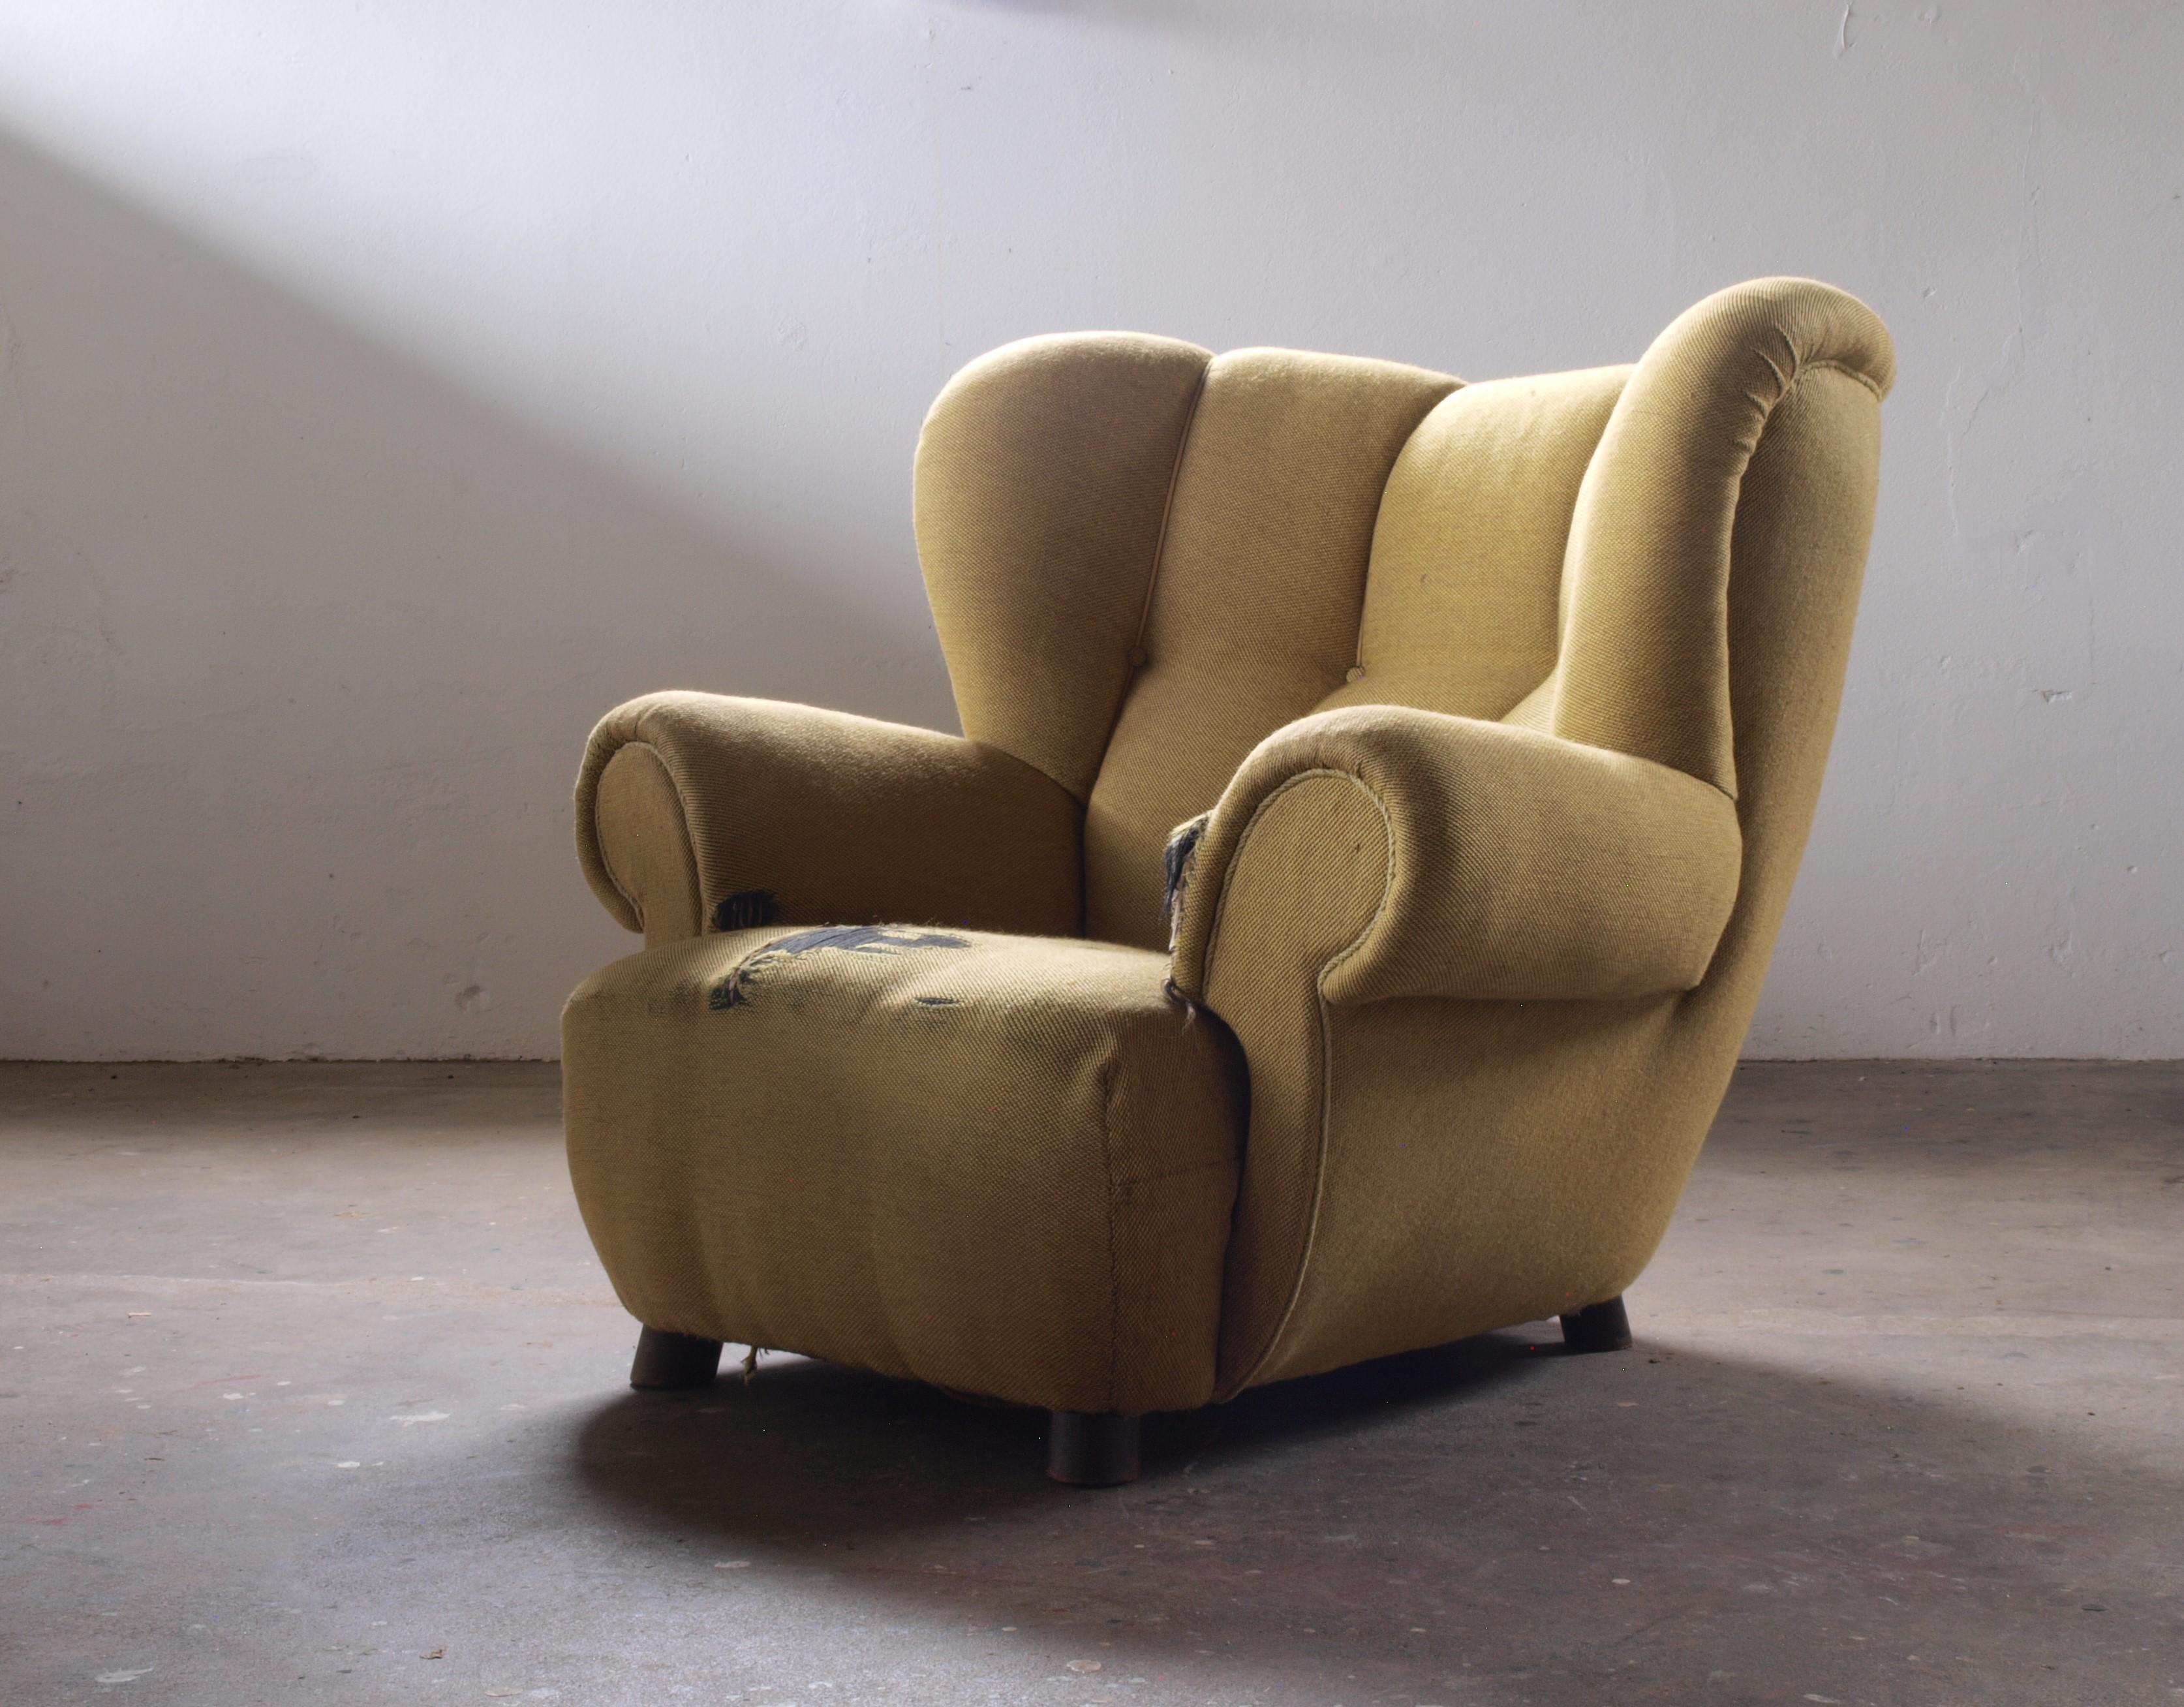 Grand fauteuil rembourré datant des années 1930. Confortable et accueillant. Comparable au style de Flemming Lassen. Potentiellement retapissé en laine d'agneau. Nécessite un espace important en raison de sa taille et de sa présence. Il est